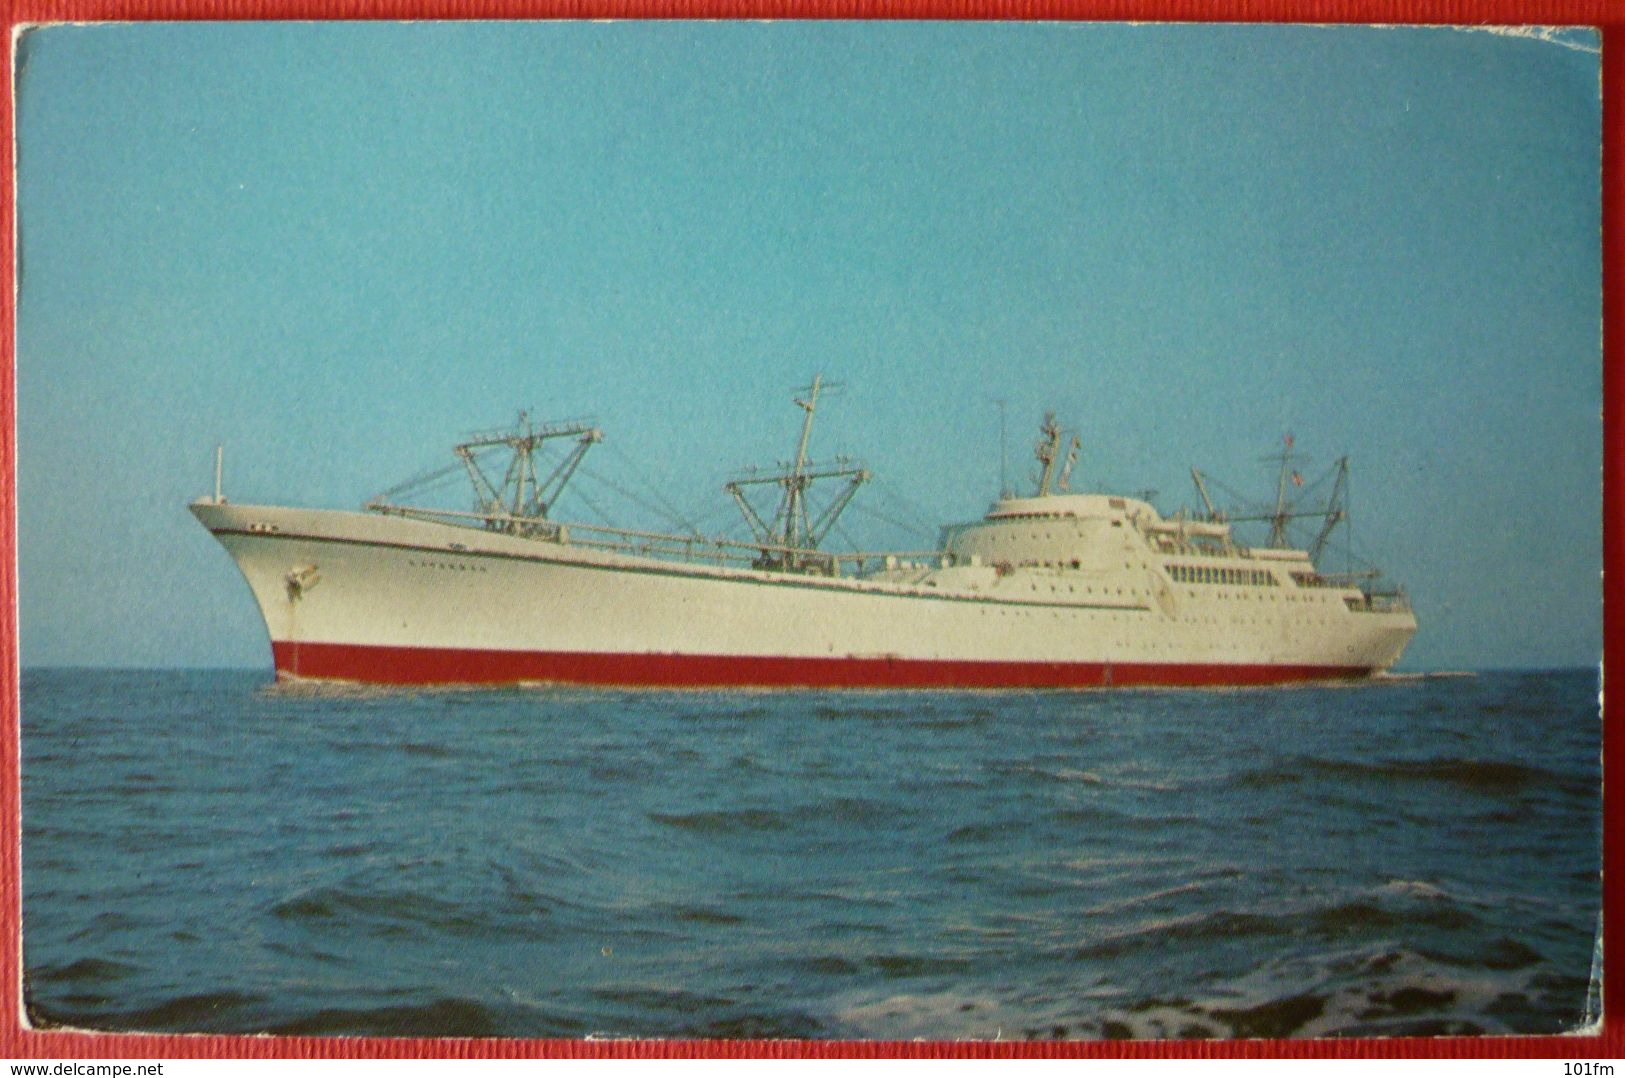 NUCLEAR SHIP SAVANNAH - Paquebote